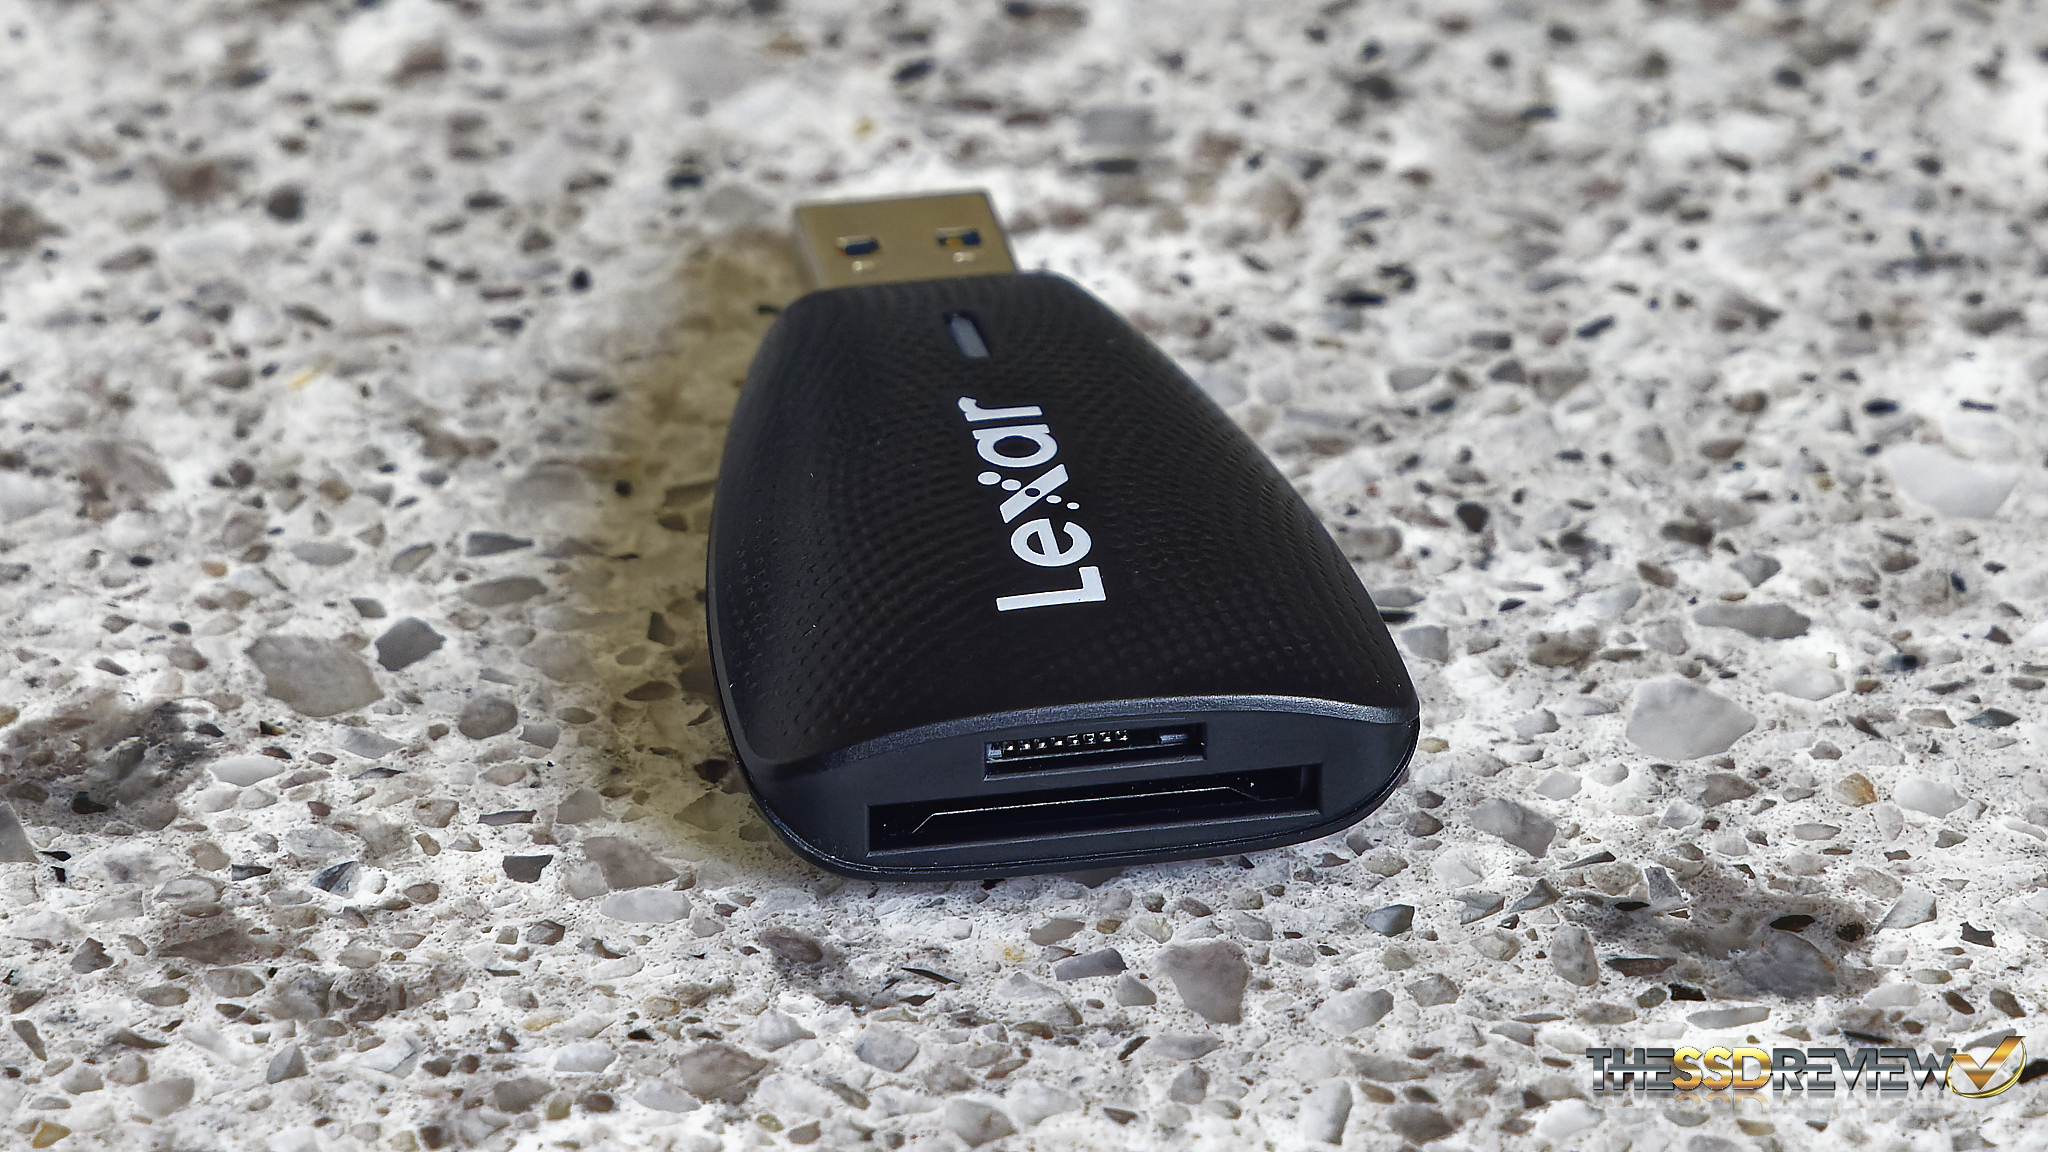 Lexar announced a new CFexpress USB 3.2 Gen 2×2 Type B memory card